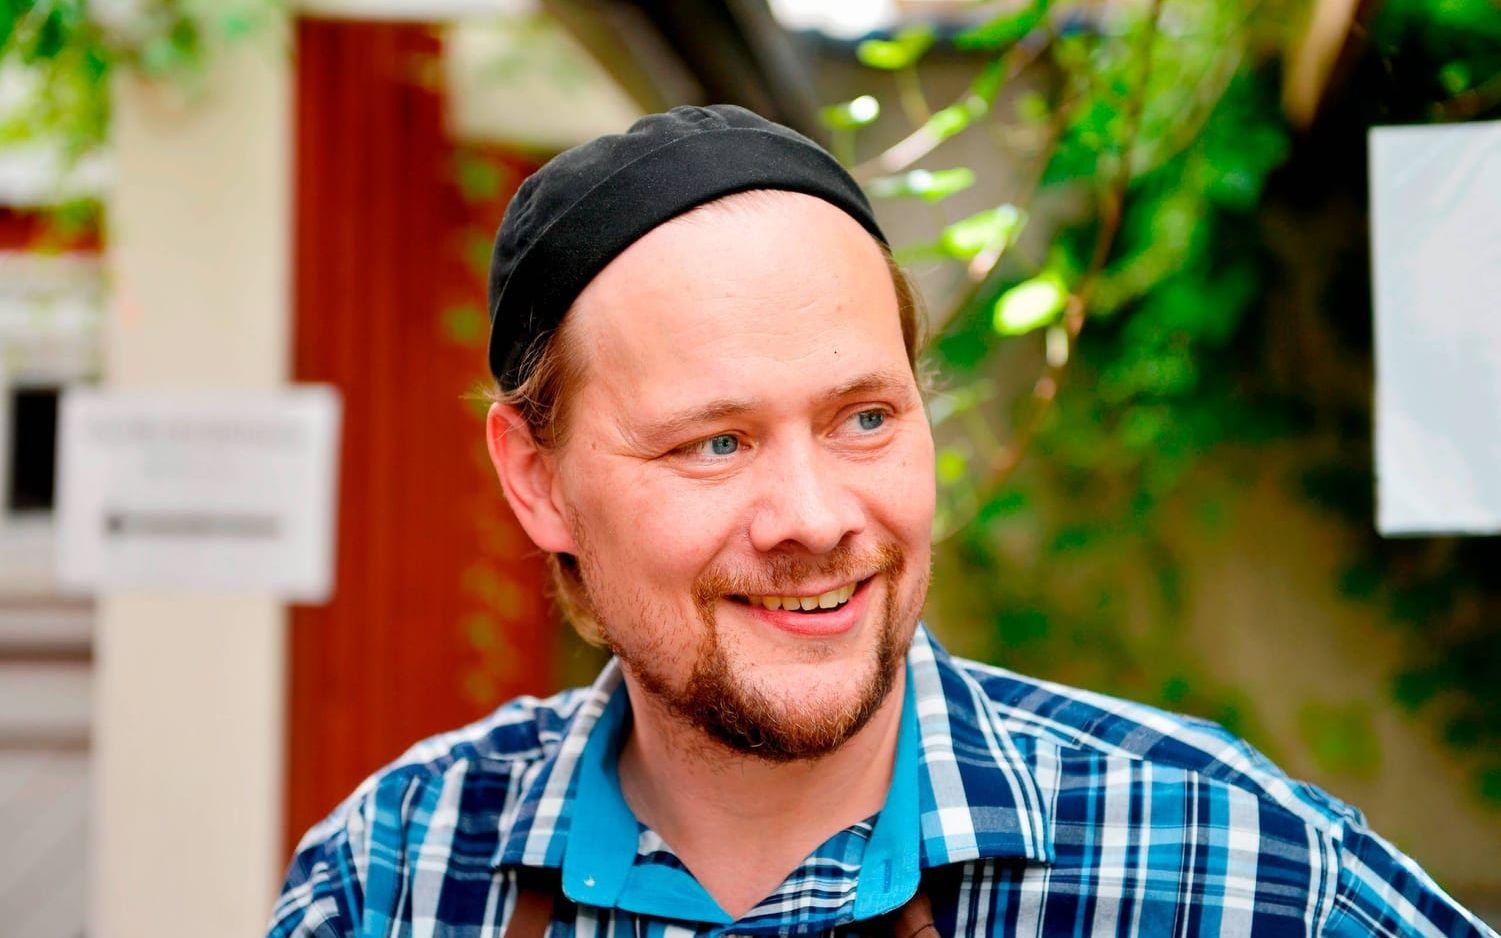 NY PÅ JOBBET. Niklas Säwström gör sin första sommar som ansvarig